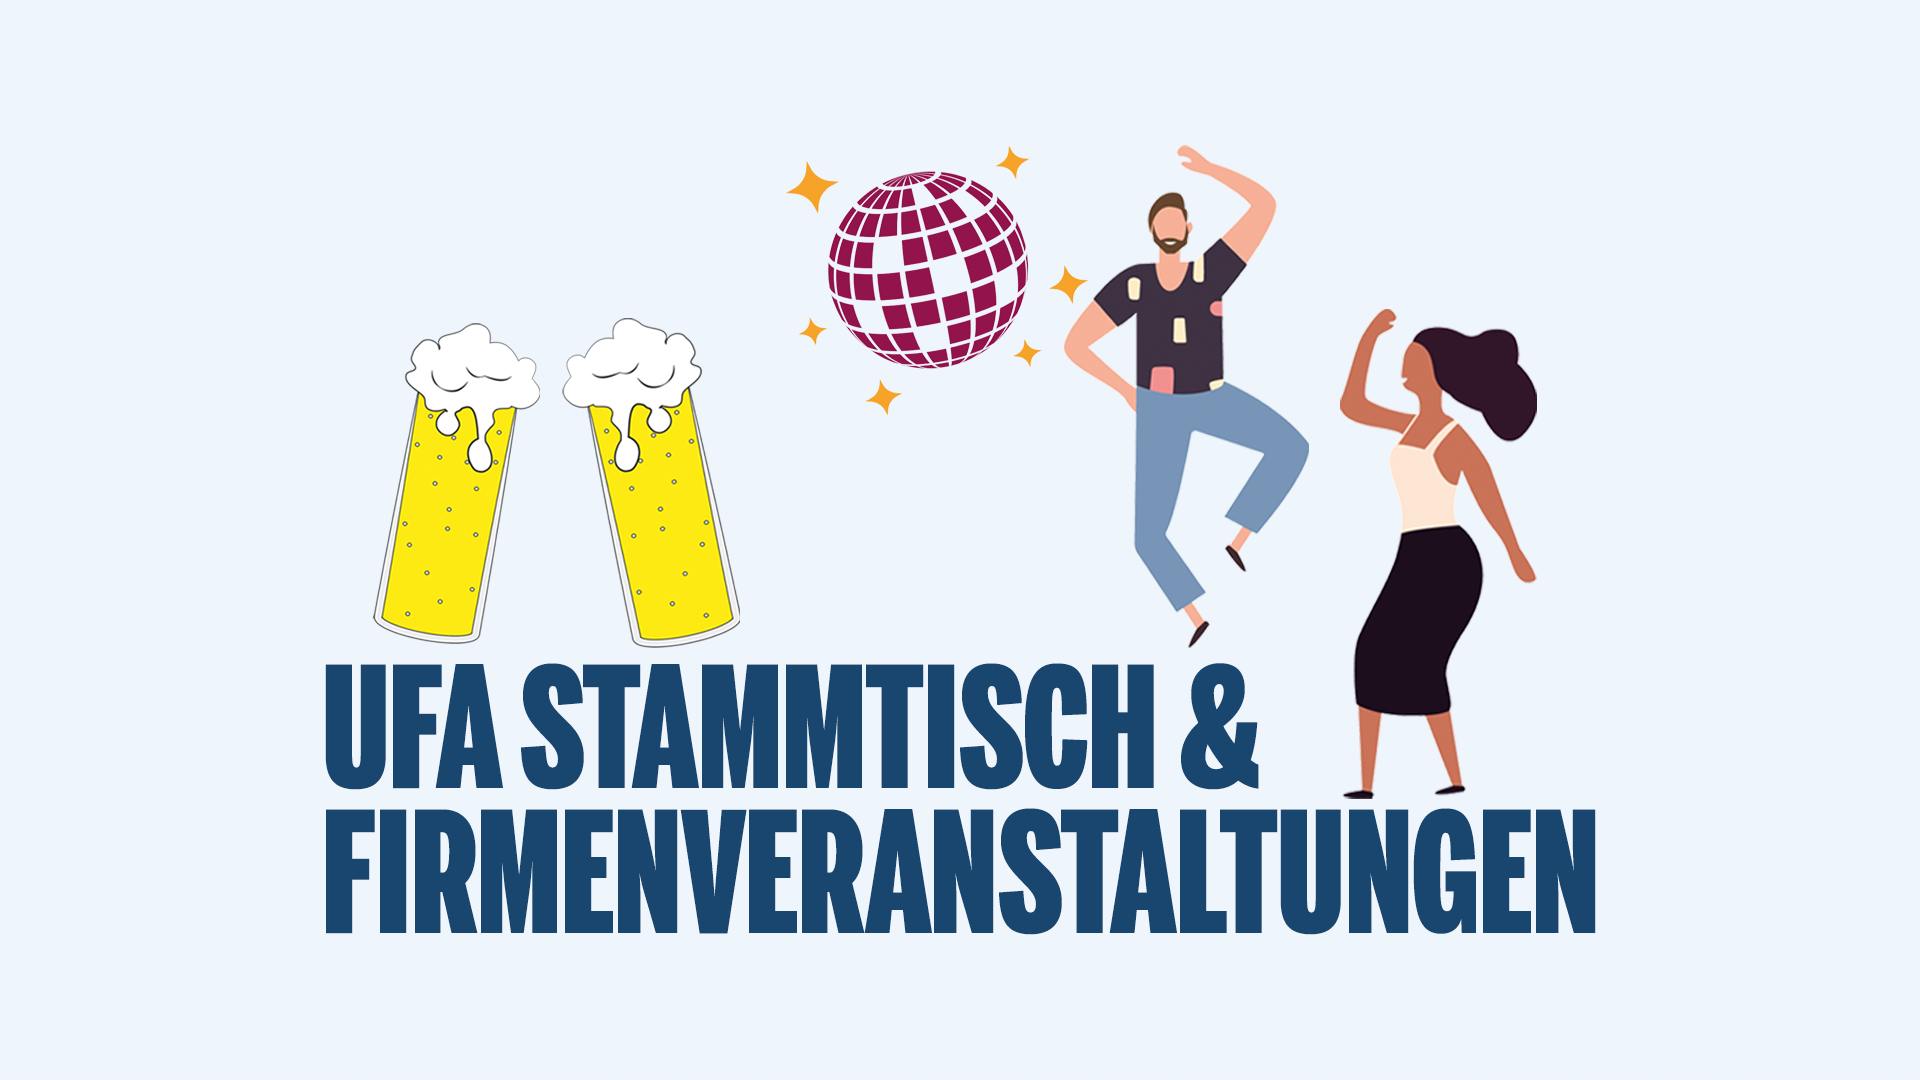 Am letzten Donnerstag jedes Monats findet der UFA Stammtisch in Köln statt. Darüber hinaus gibt es regelmäßige Firmenveranstaltungen wie die jährlichen Sommer- und Weihnachtsfeiern.